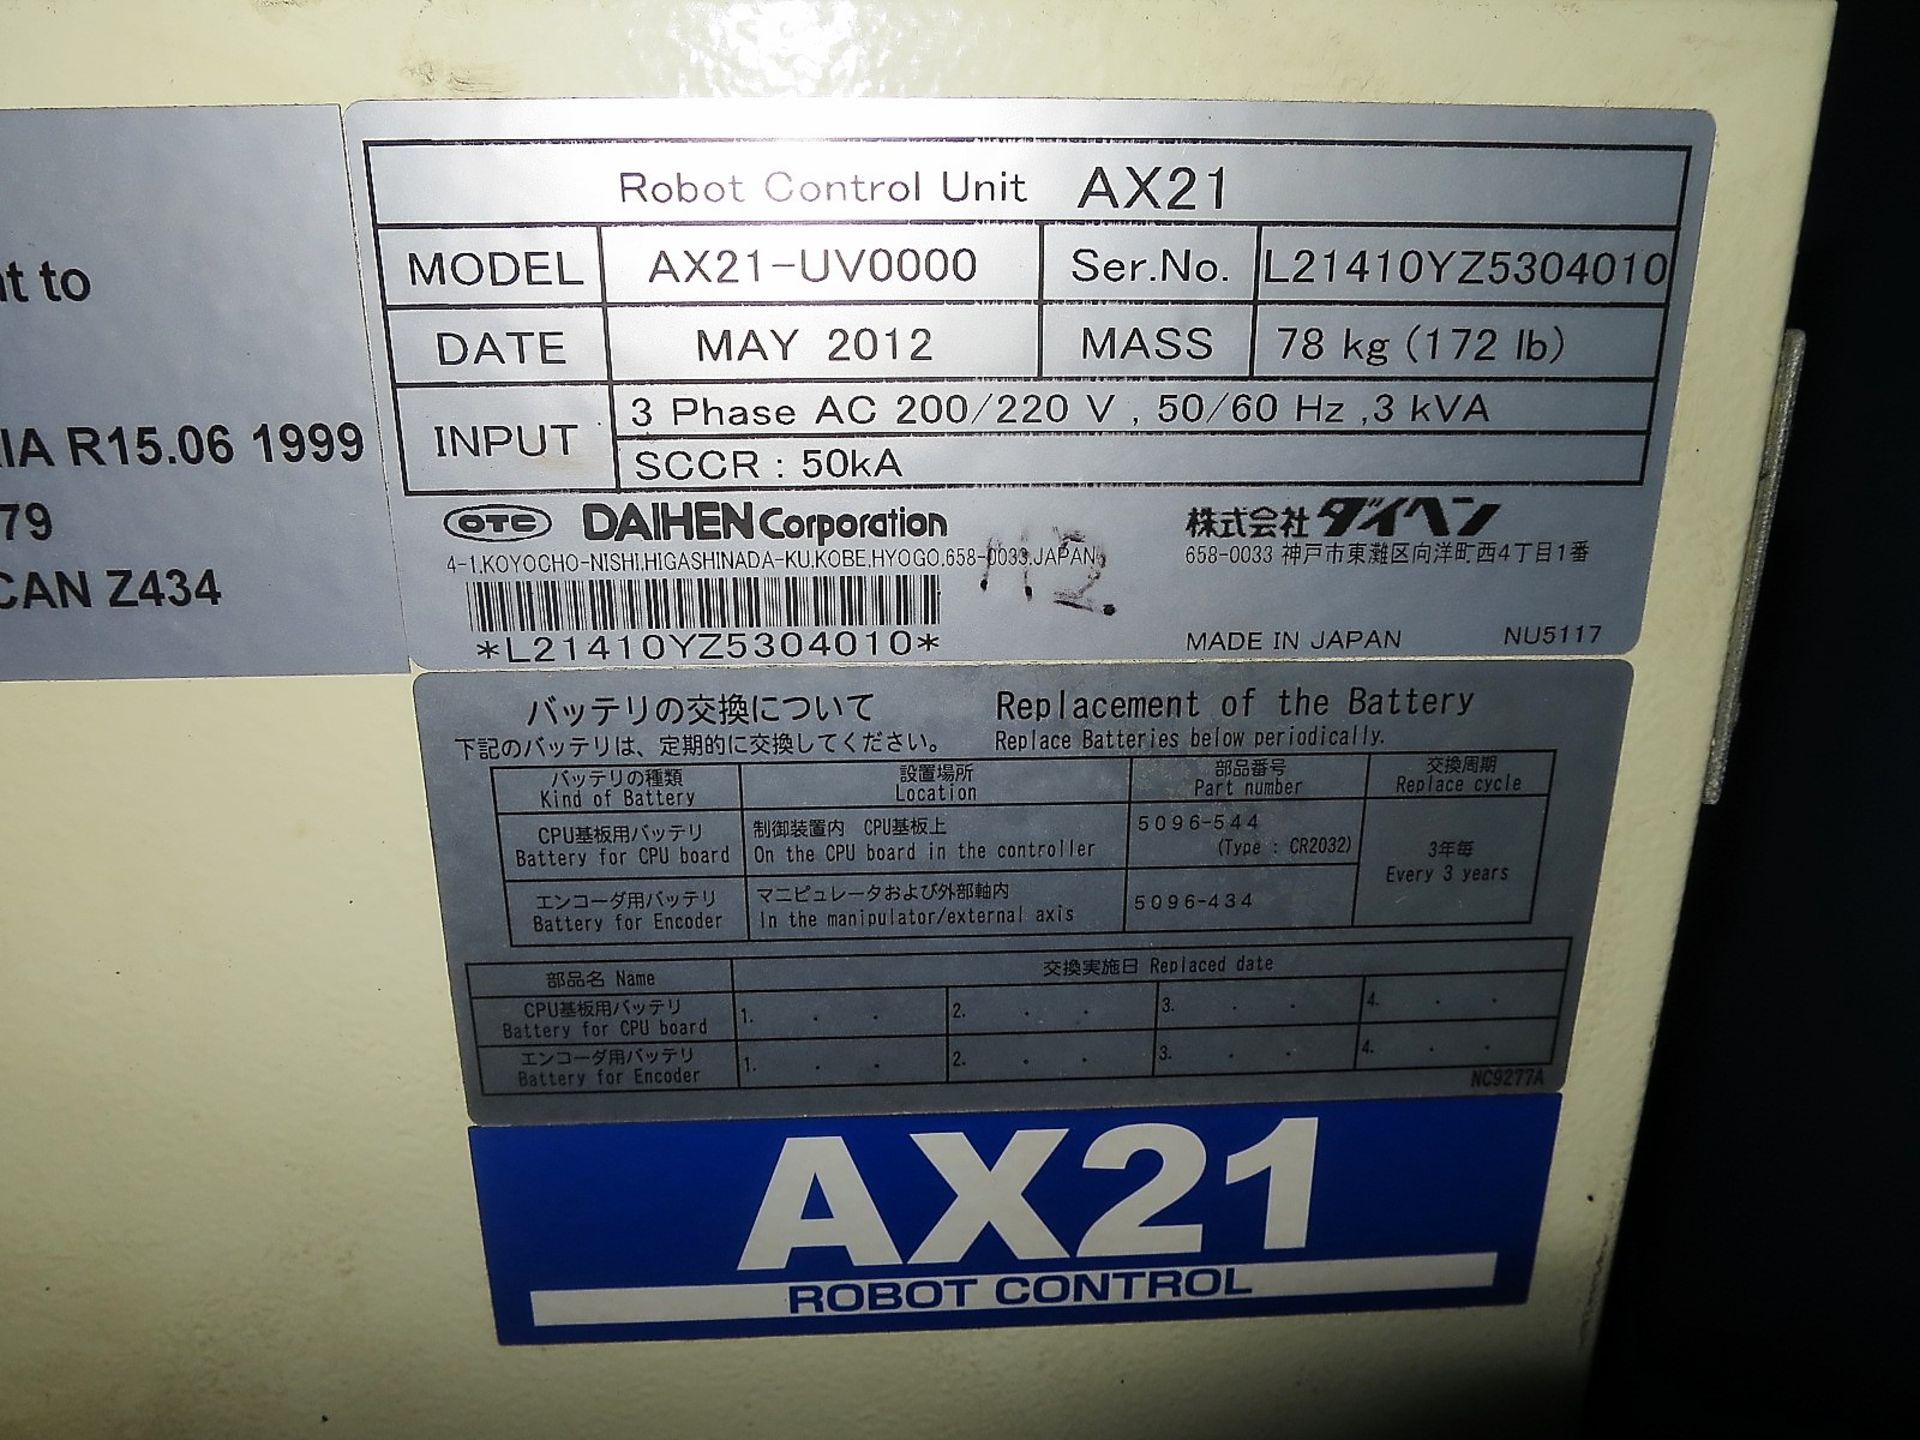 OTC DAIHEN ALMEGA ARC E-120 ROBOTIC WELDING CELL, S/N 1M0452YZ510, New 2012 - Image 6 of 9